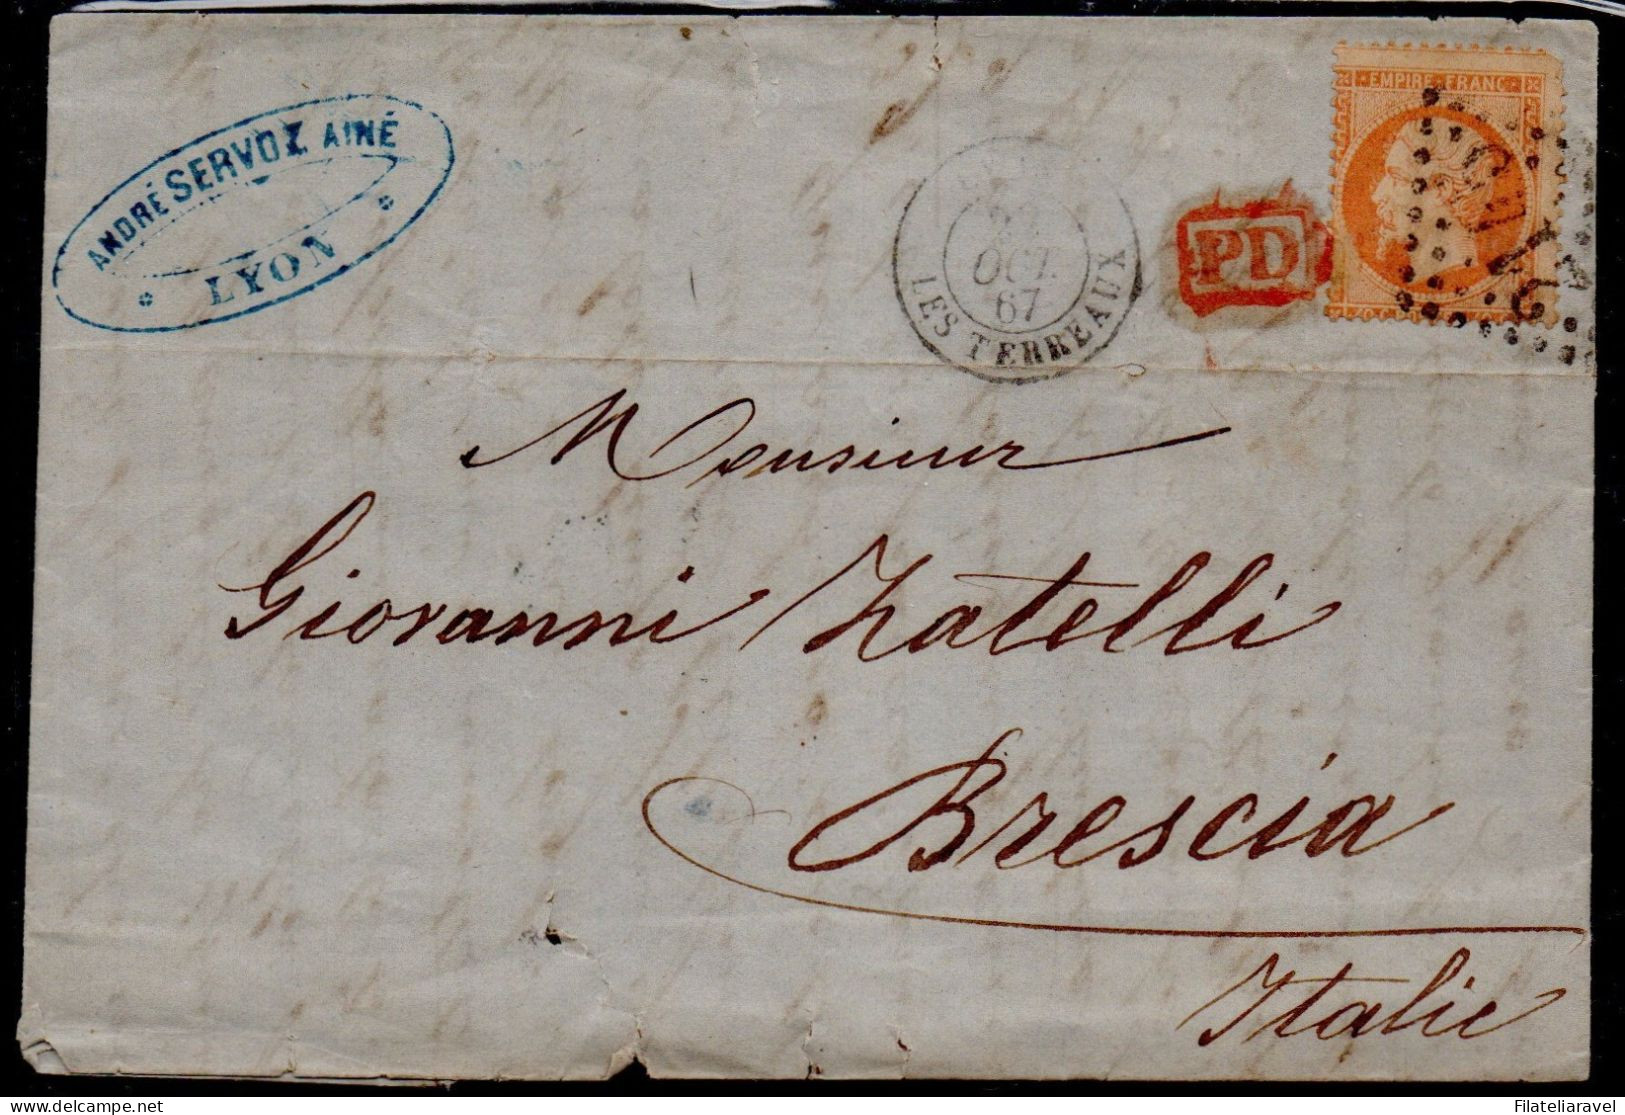 Francia - 1877/1945 - Storia Postale, piccolo lotto composto da n.7 lettere viaggiate.